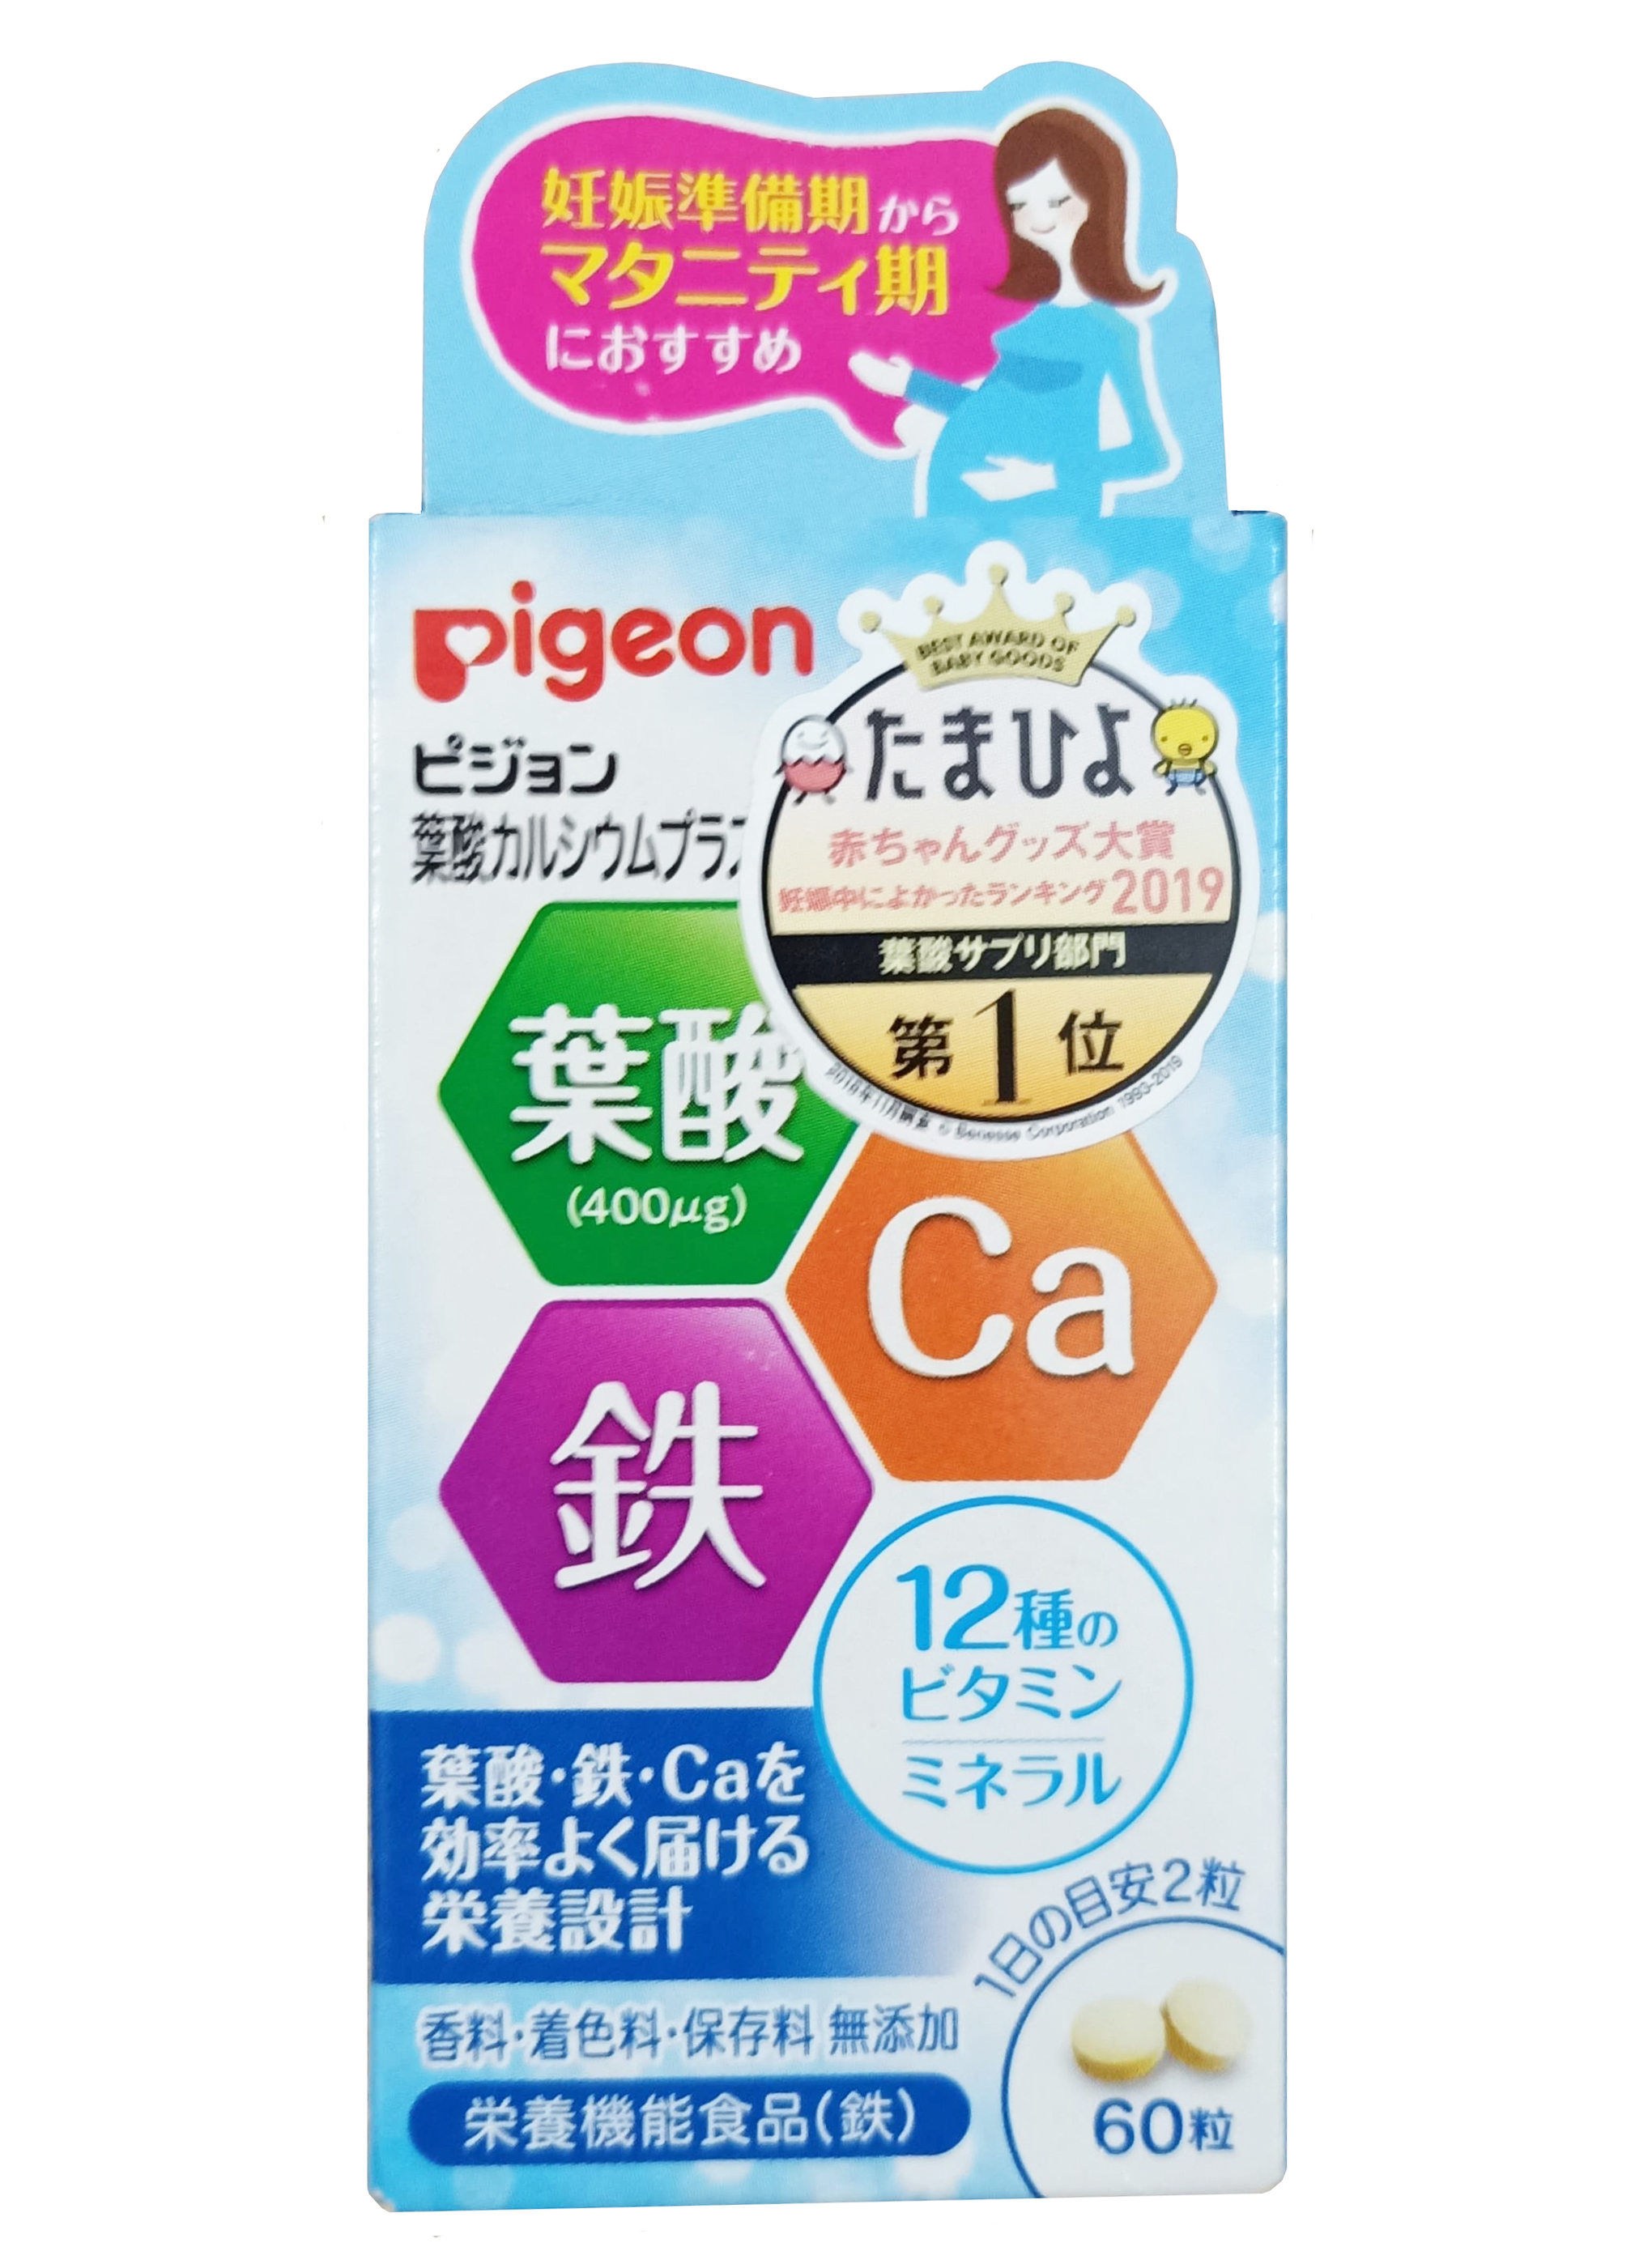 Vitamin tổng hợp cho bà bầu Pigeon hộp 60 viên có chứa những thành phần gì?